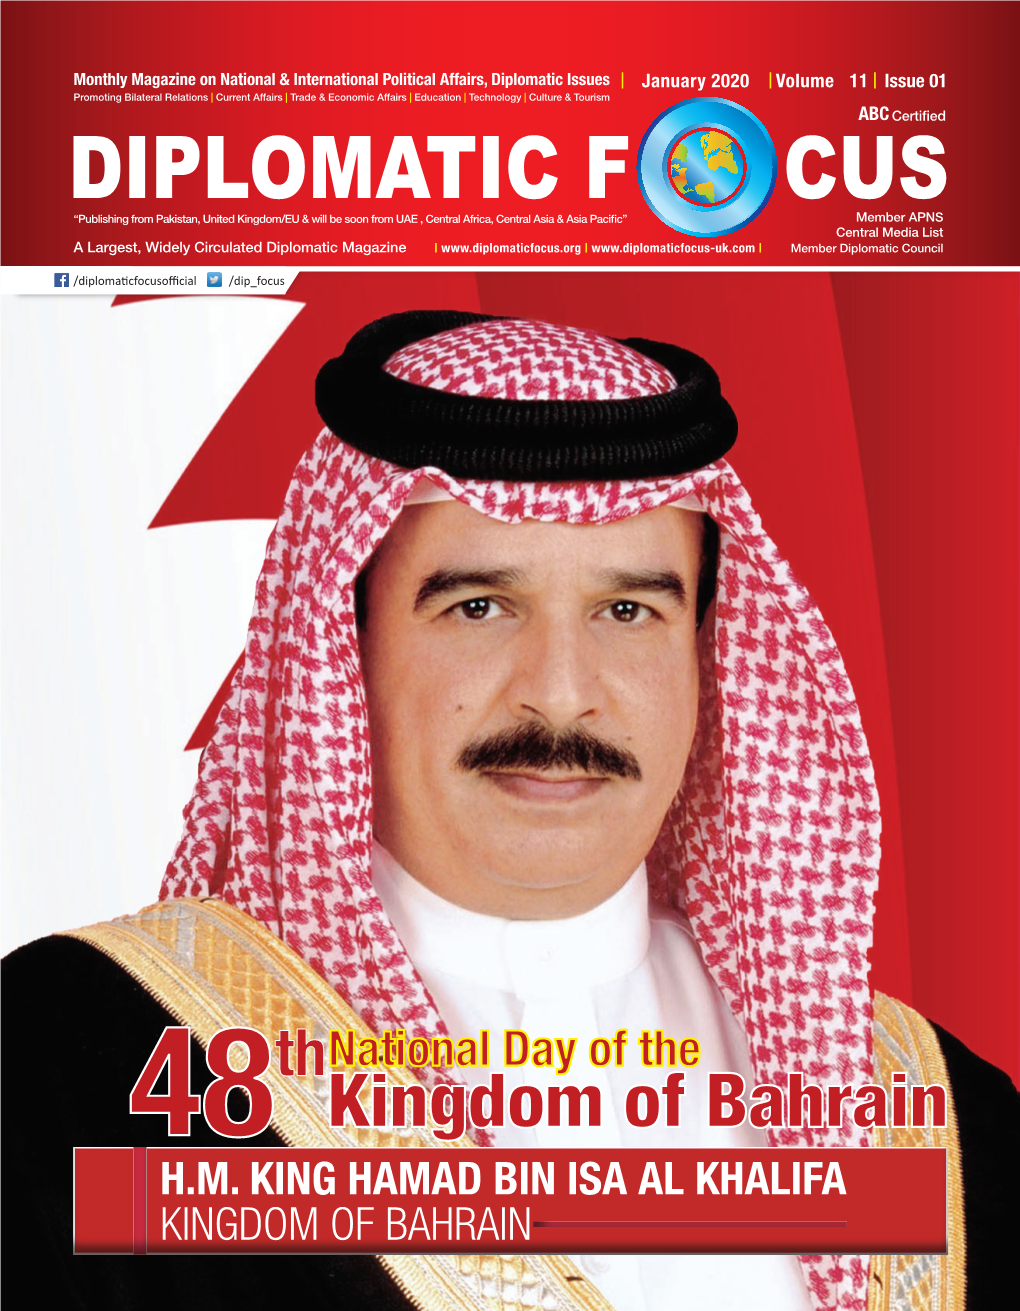 Kingdom of Bahrain H.M